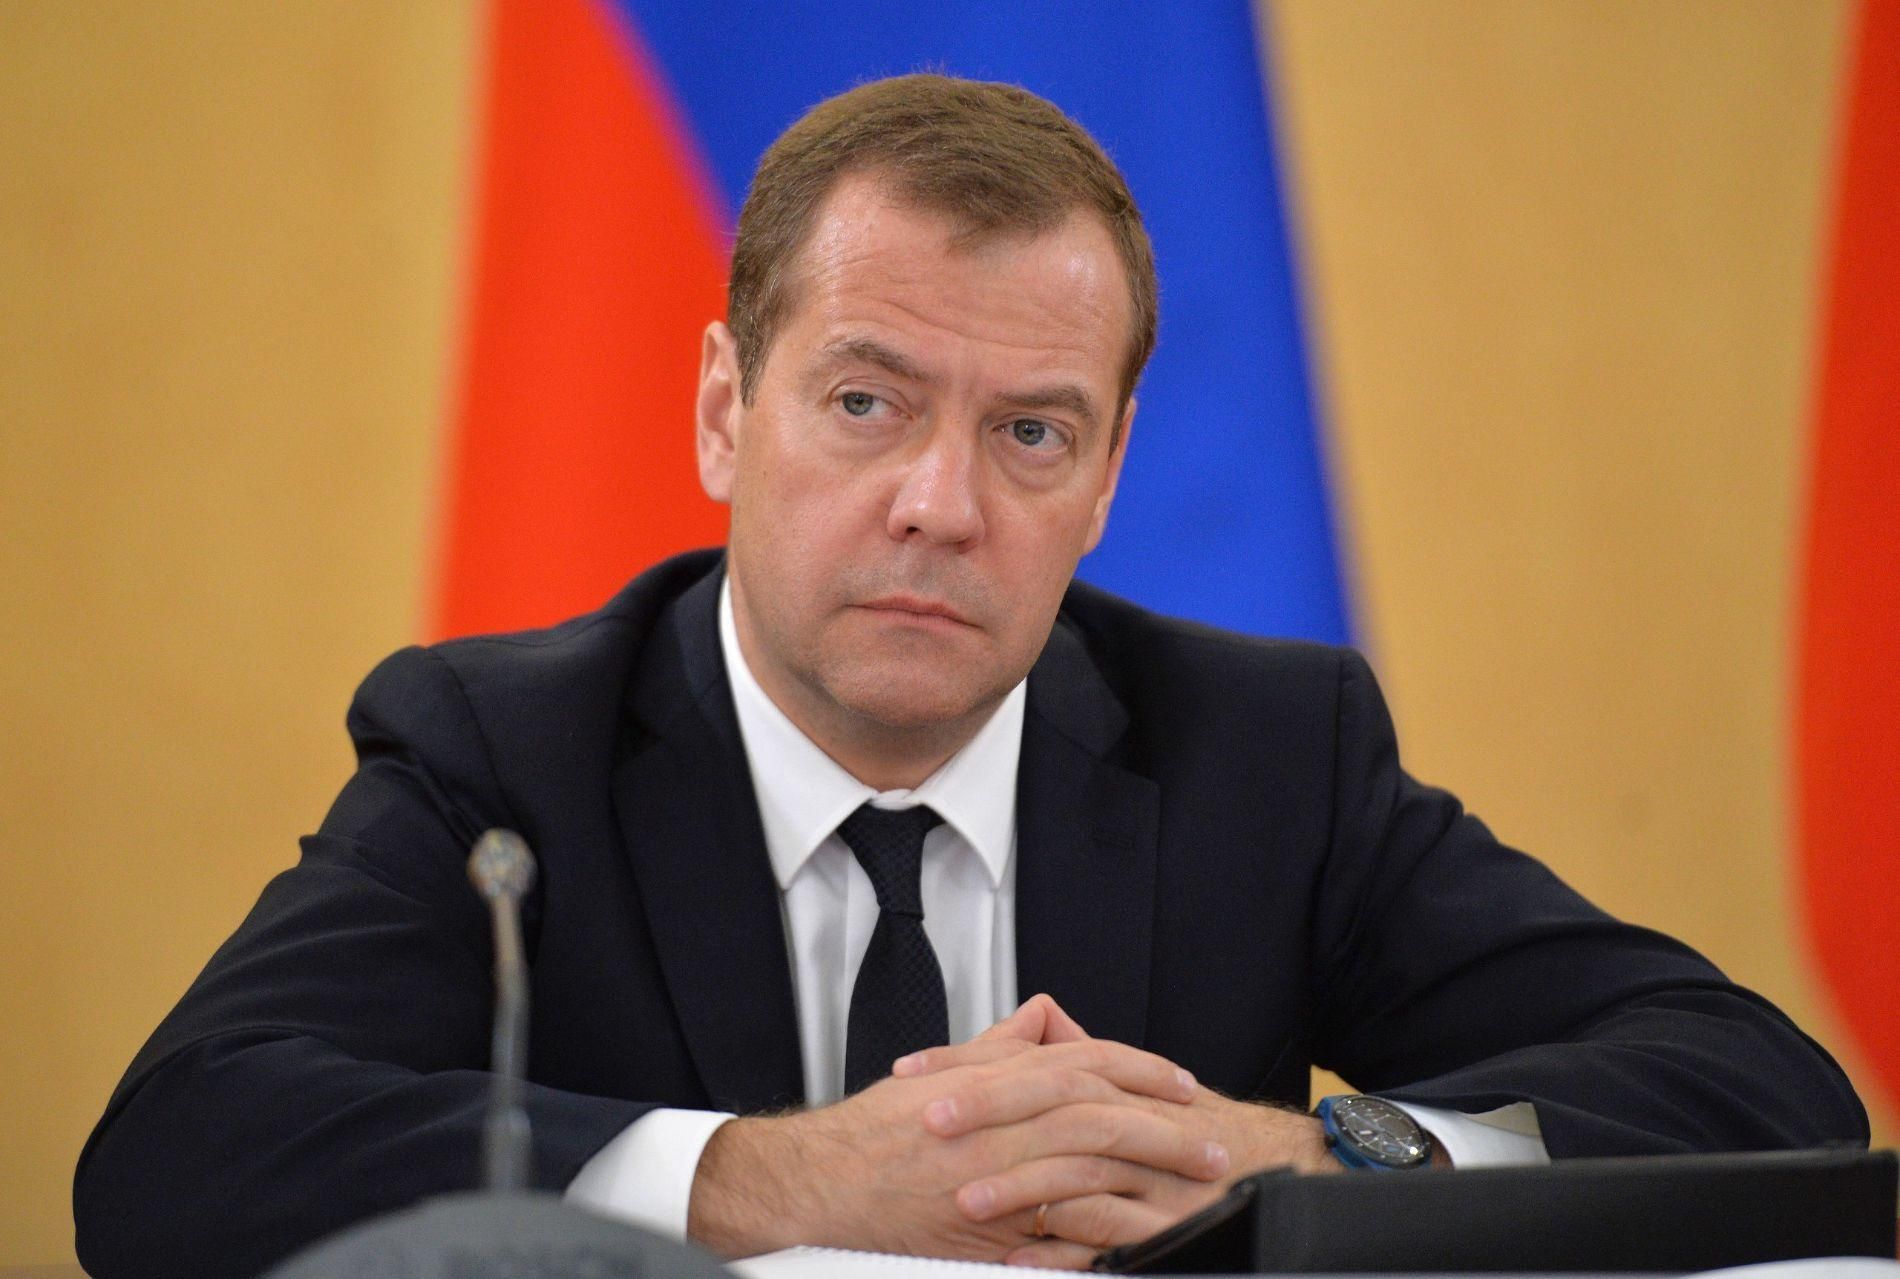 Резкая и грязная кампания, – Медведев грубо высказался об украинских выборах